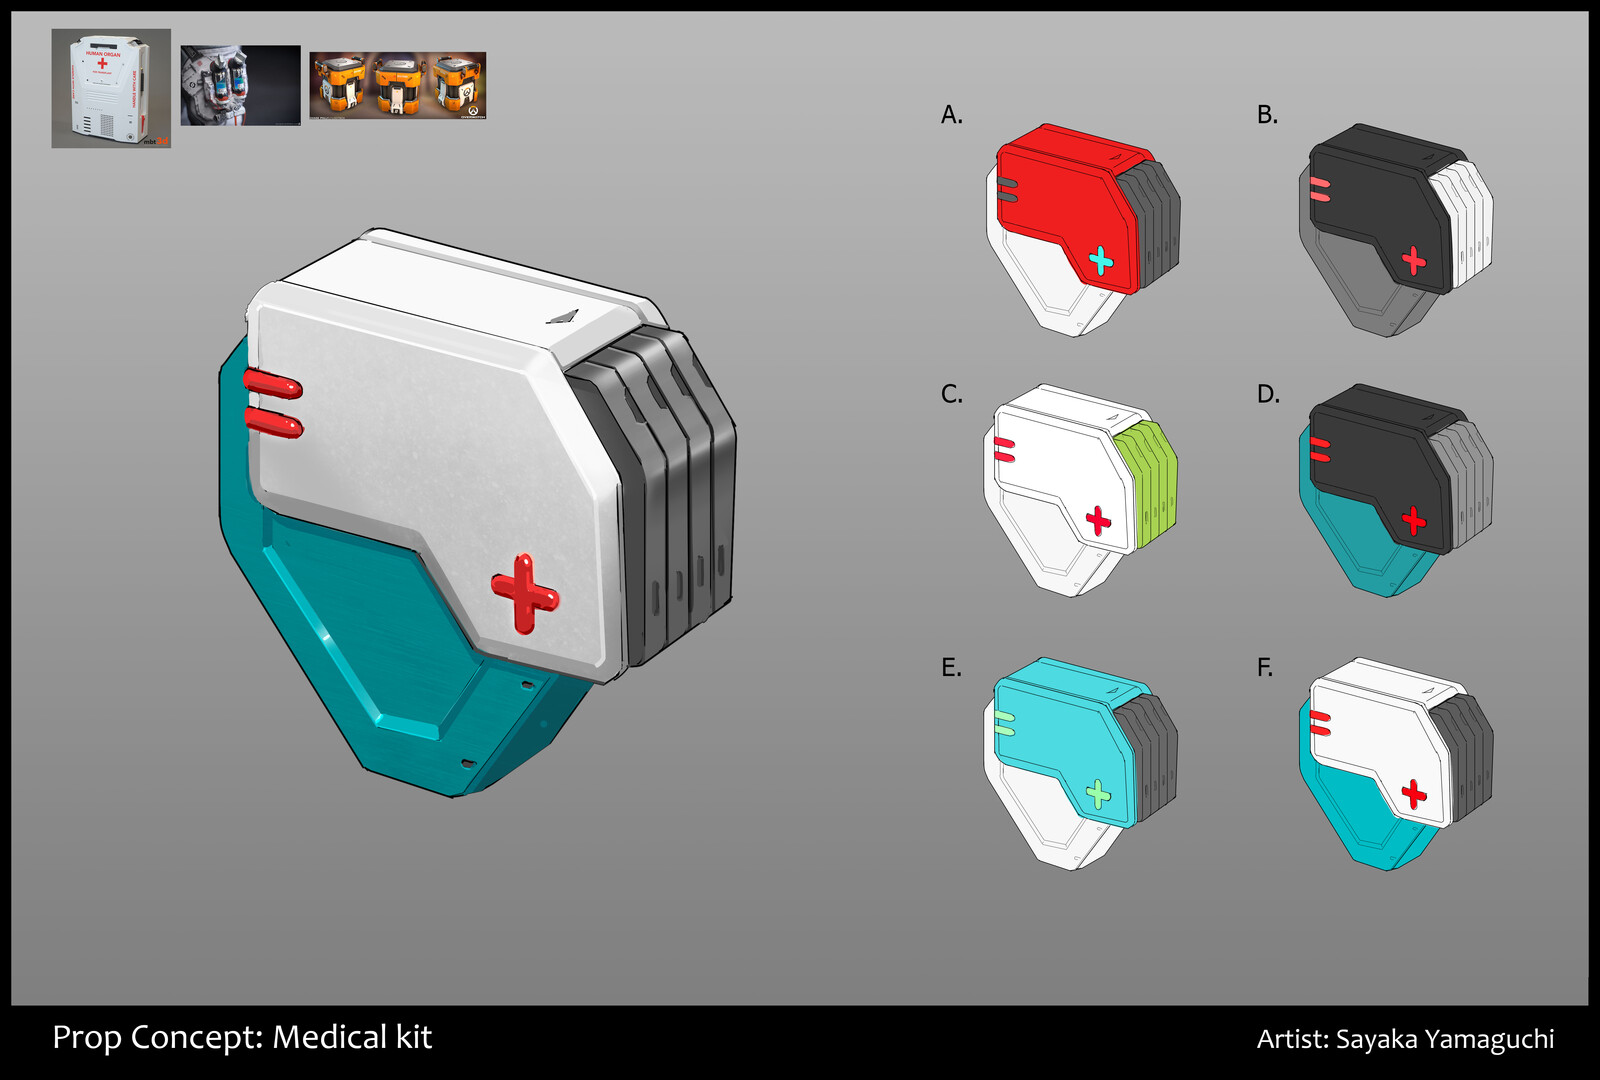 Prop Concept: Medical Kit